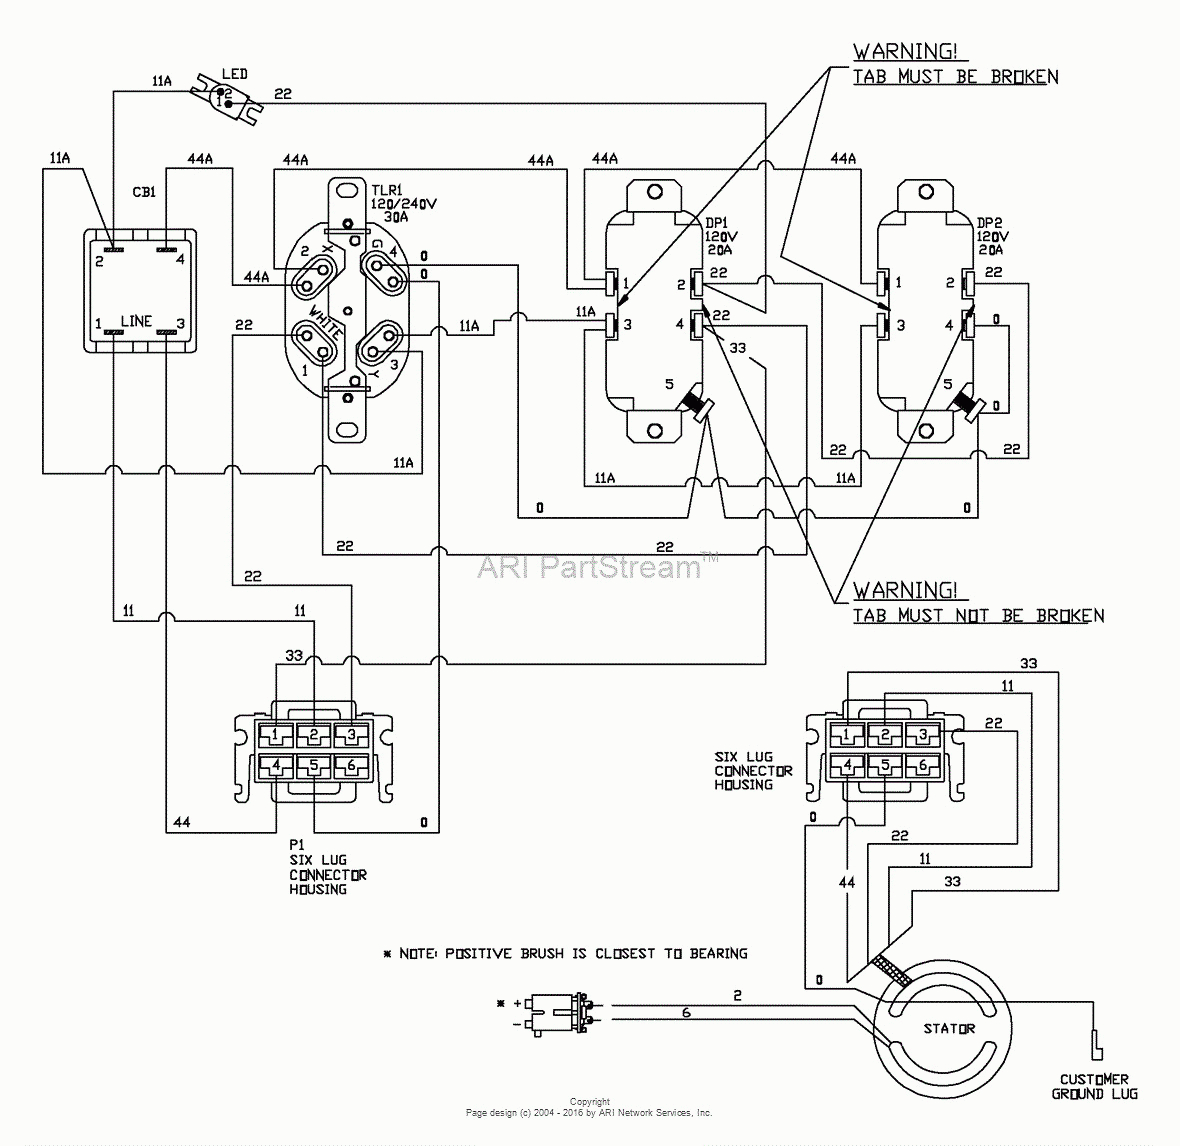 Briggs And Stratton Voltage Regulator Wiring Diagram Best Of Buy - Briggs And Stratton Voltage Regulator Wiring Diagram